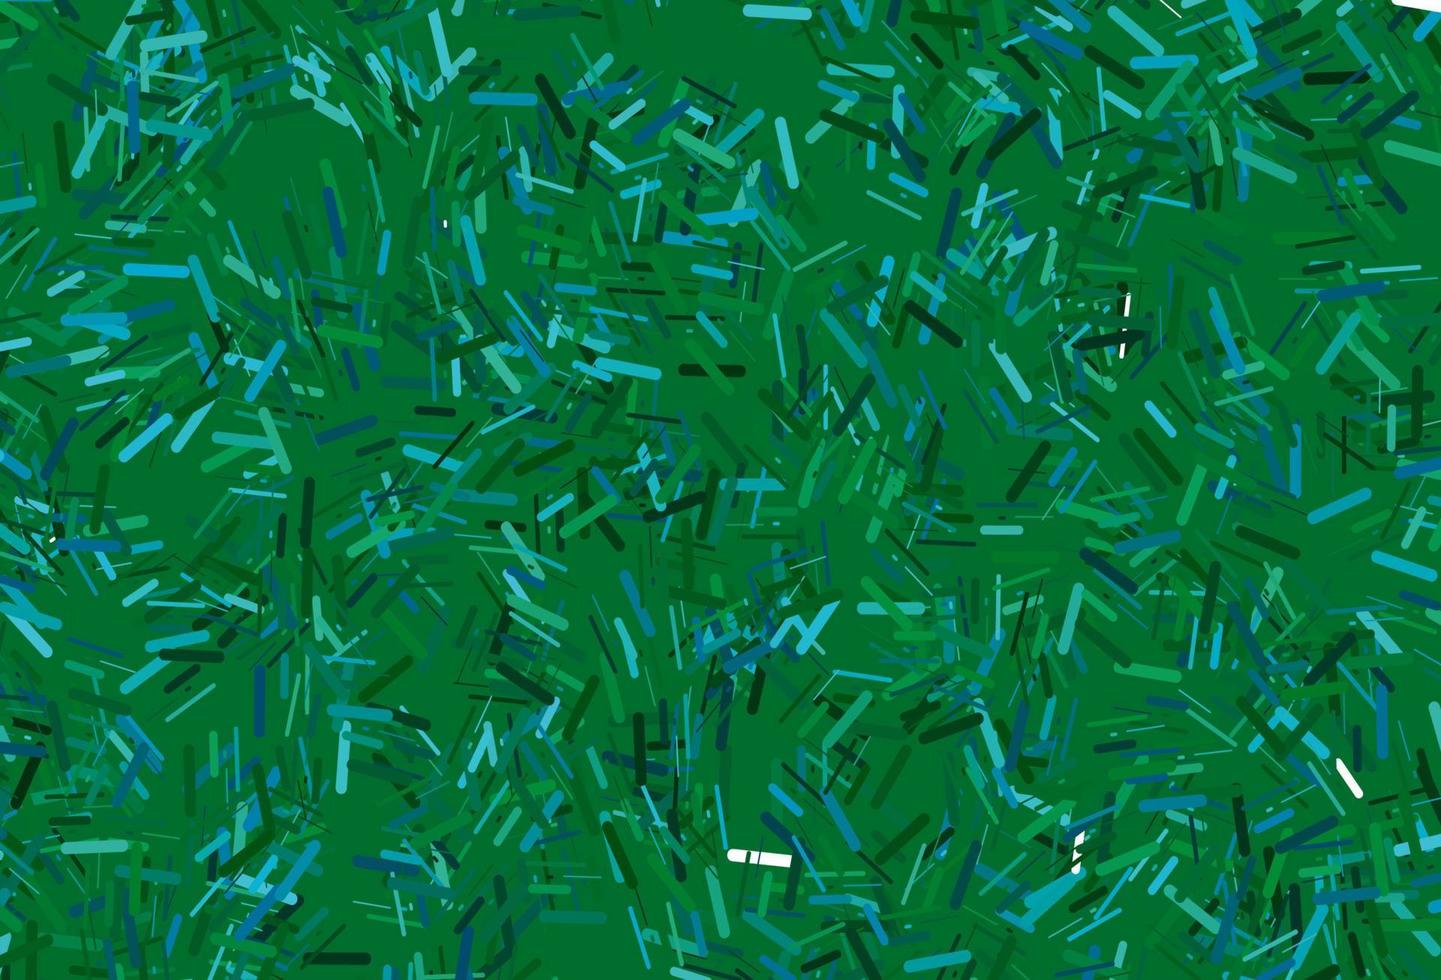 fond de vecteur bleu foncé, vert avec des lignes droites.